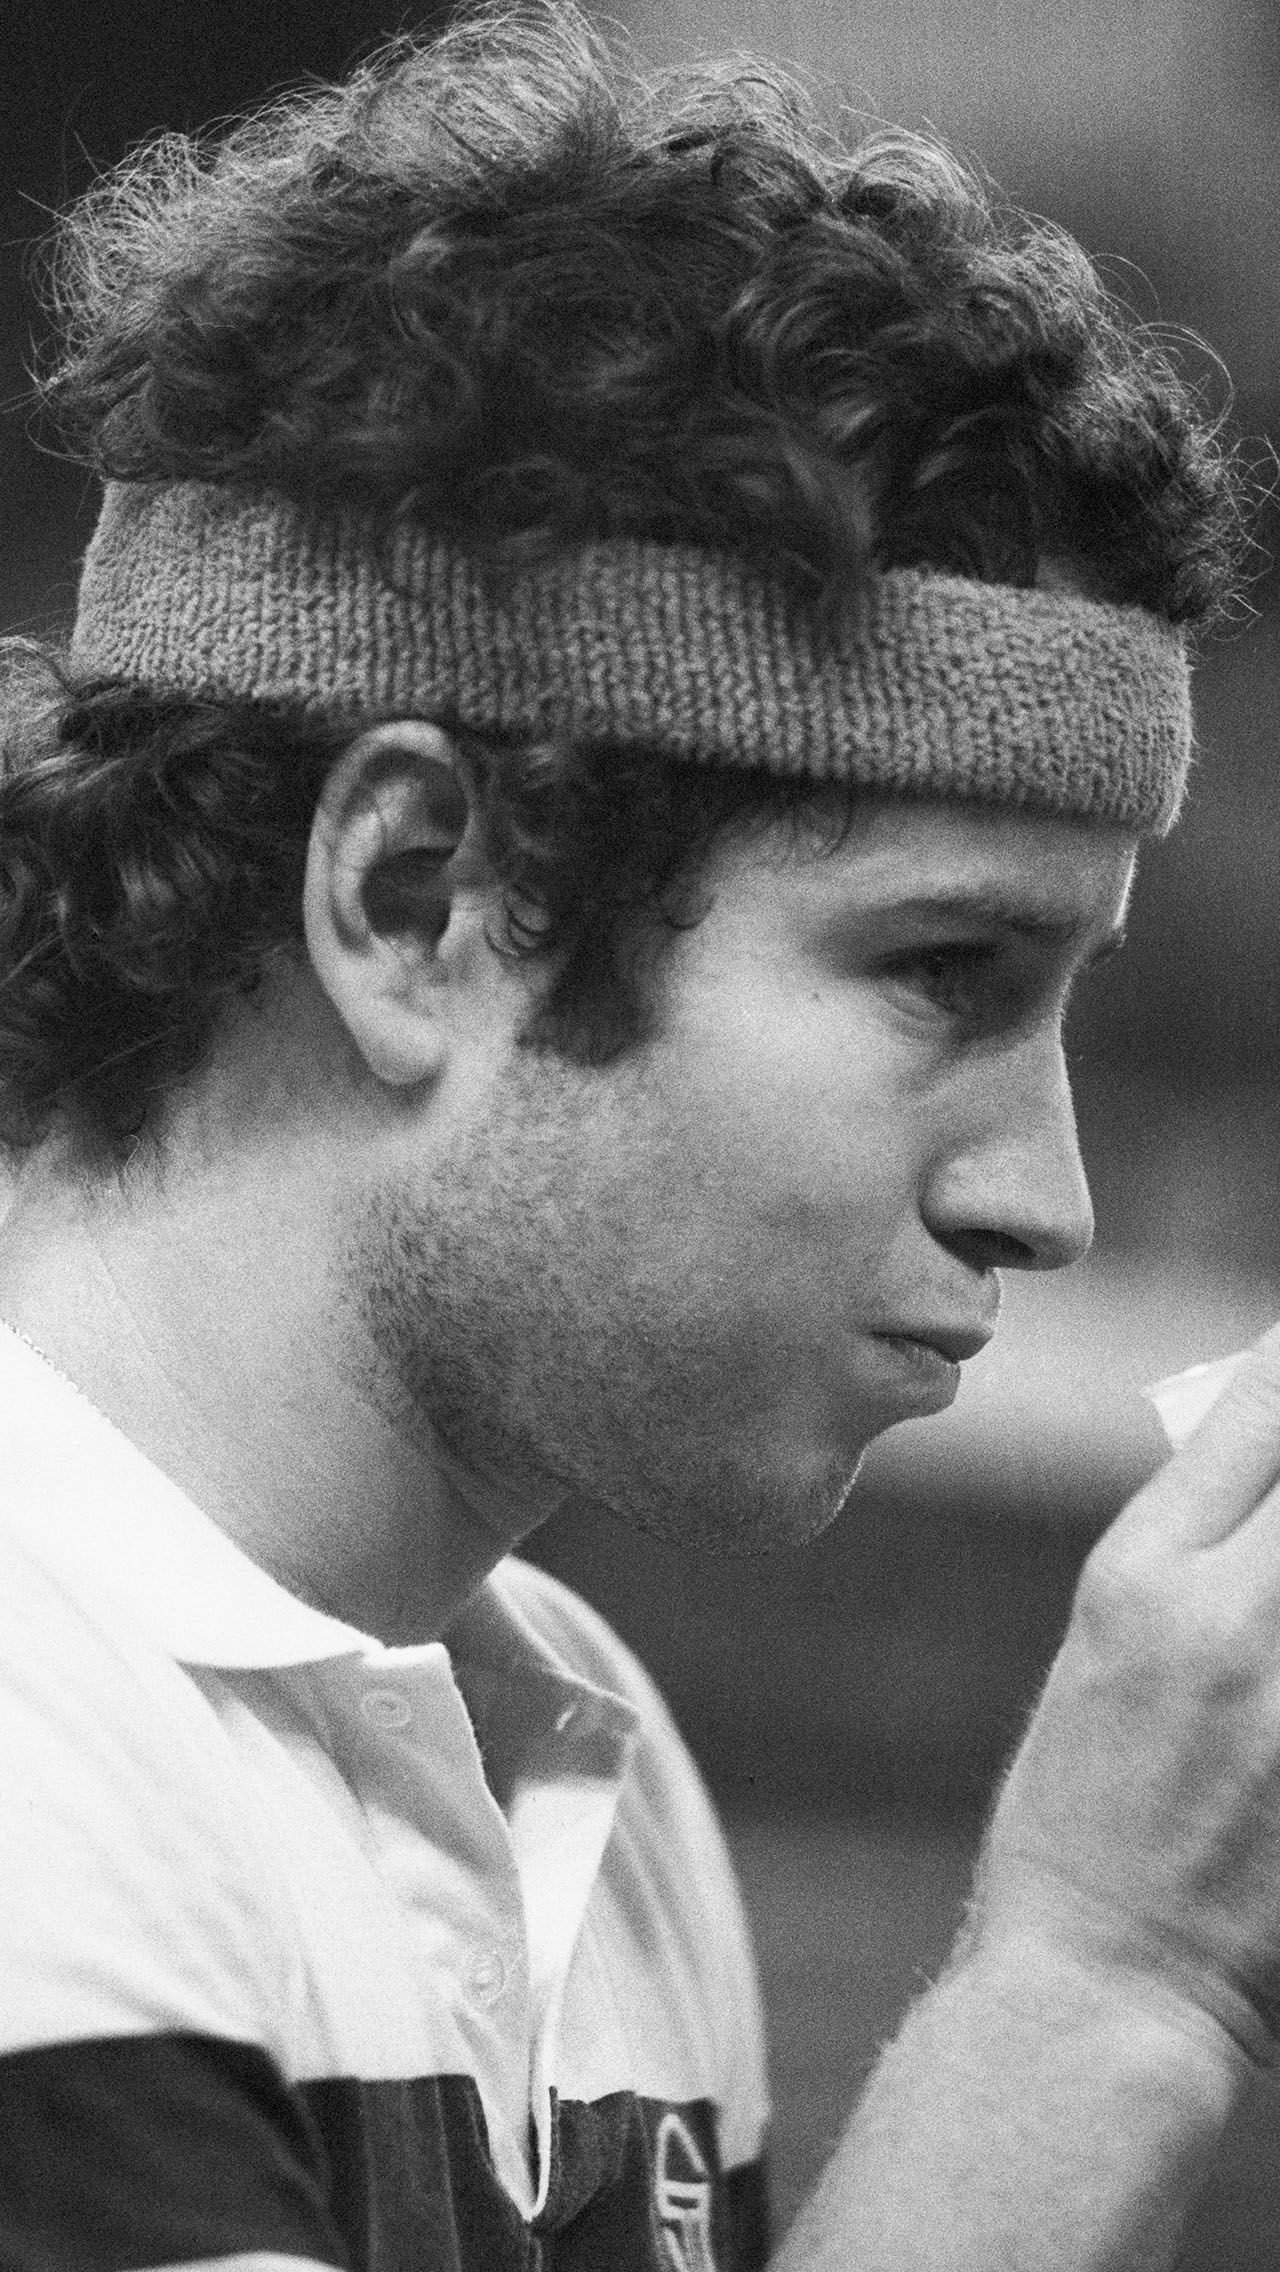 А самый молодой чемпион — Джон Макинрой. В 1978 году он взял титул в возрасте 19 лет 10 месяцев.